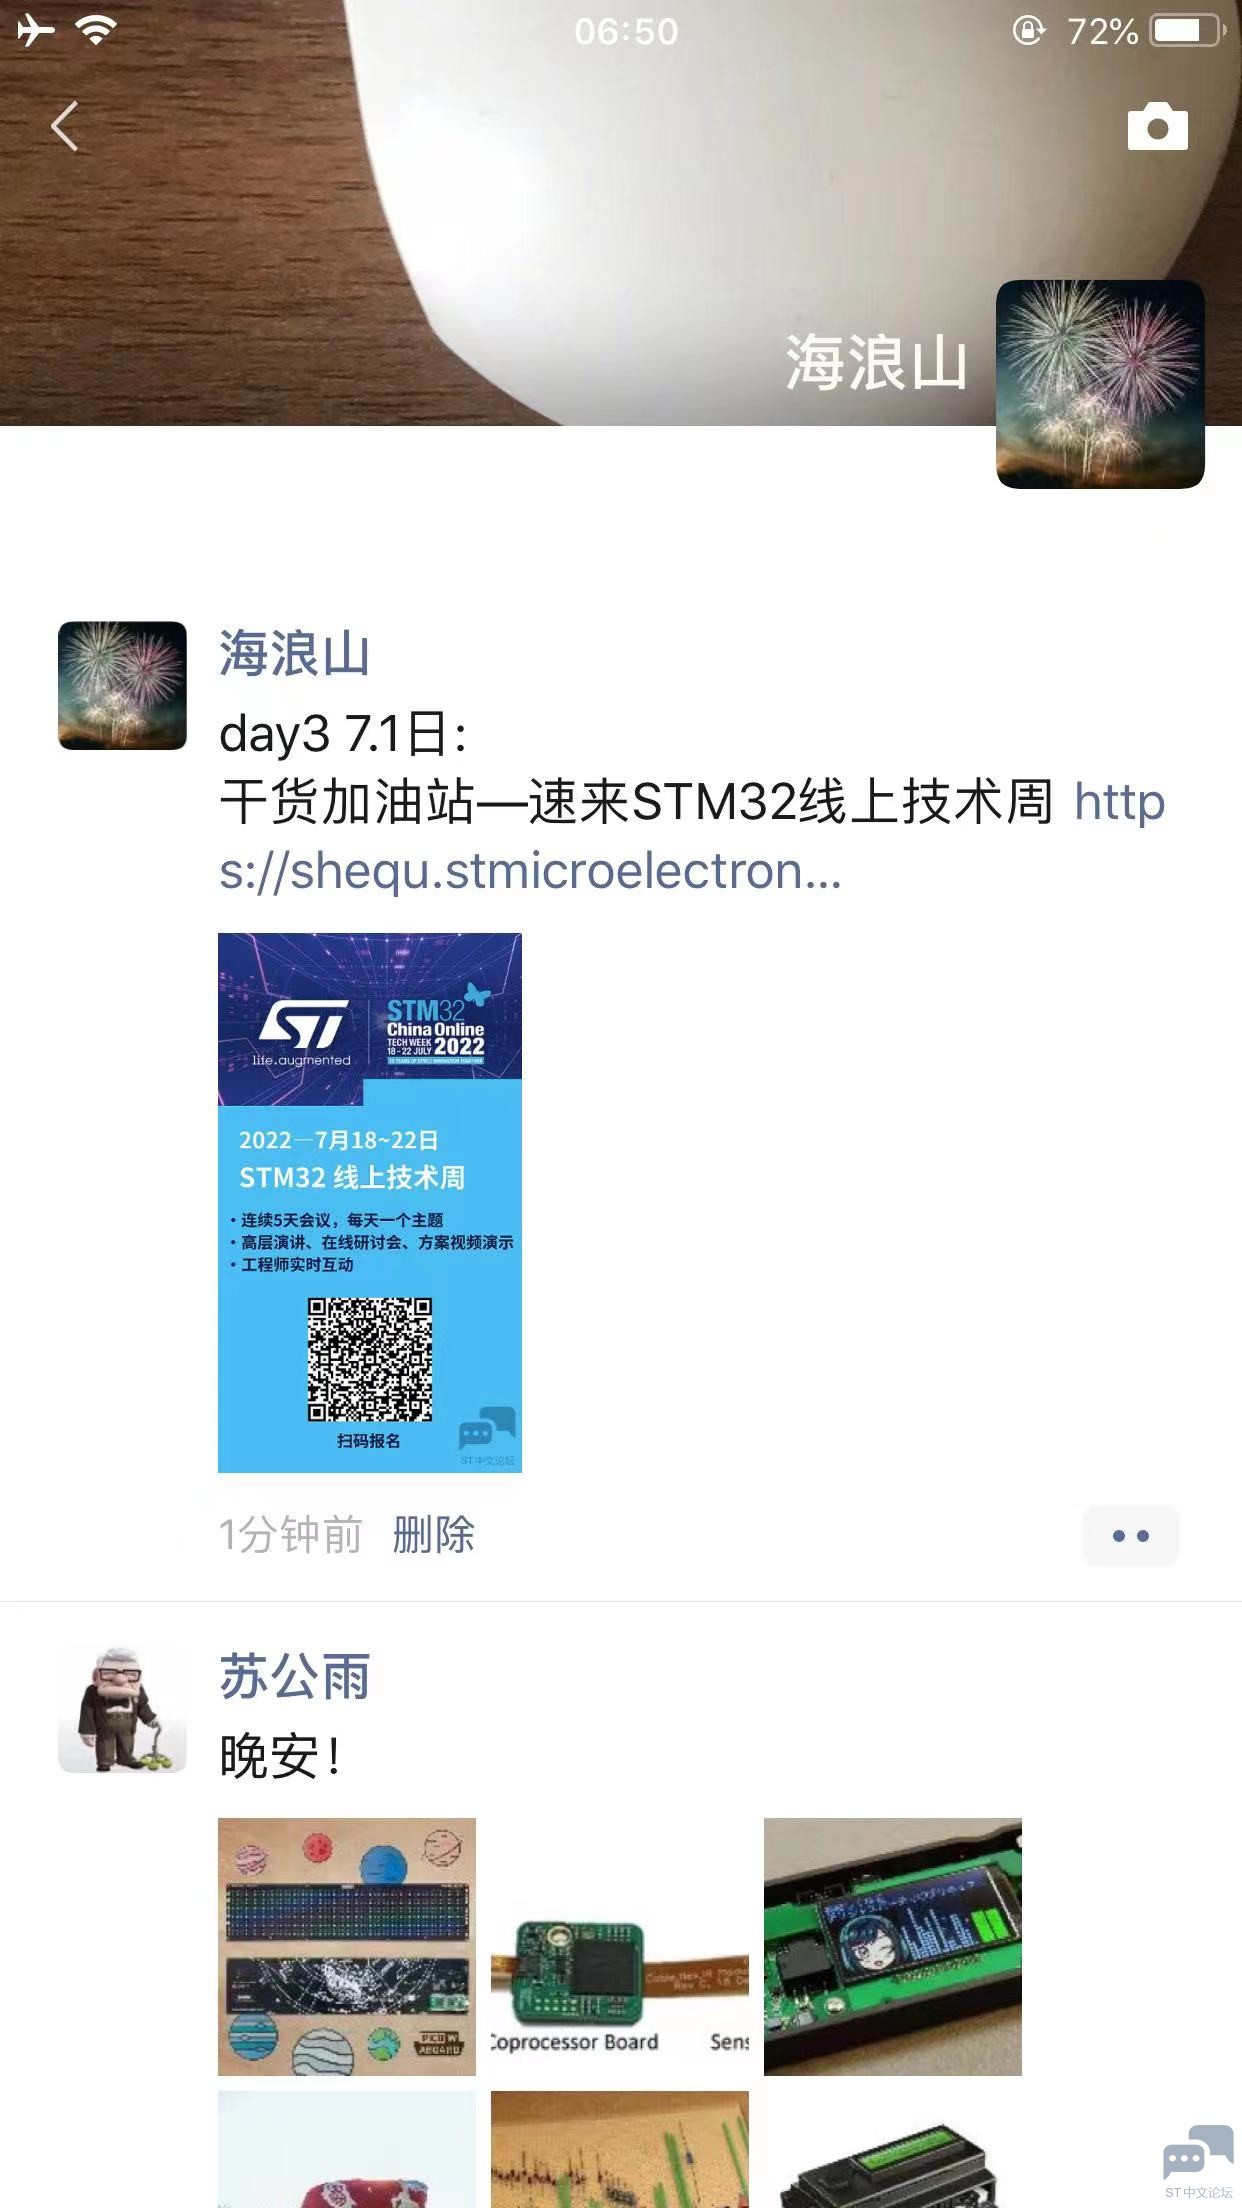 WeChat Image_20220701080637.jpg